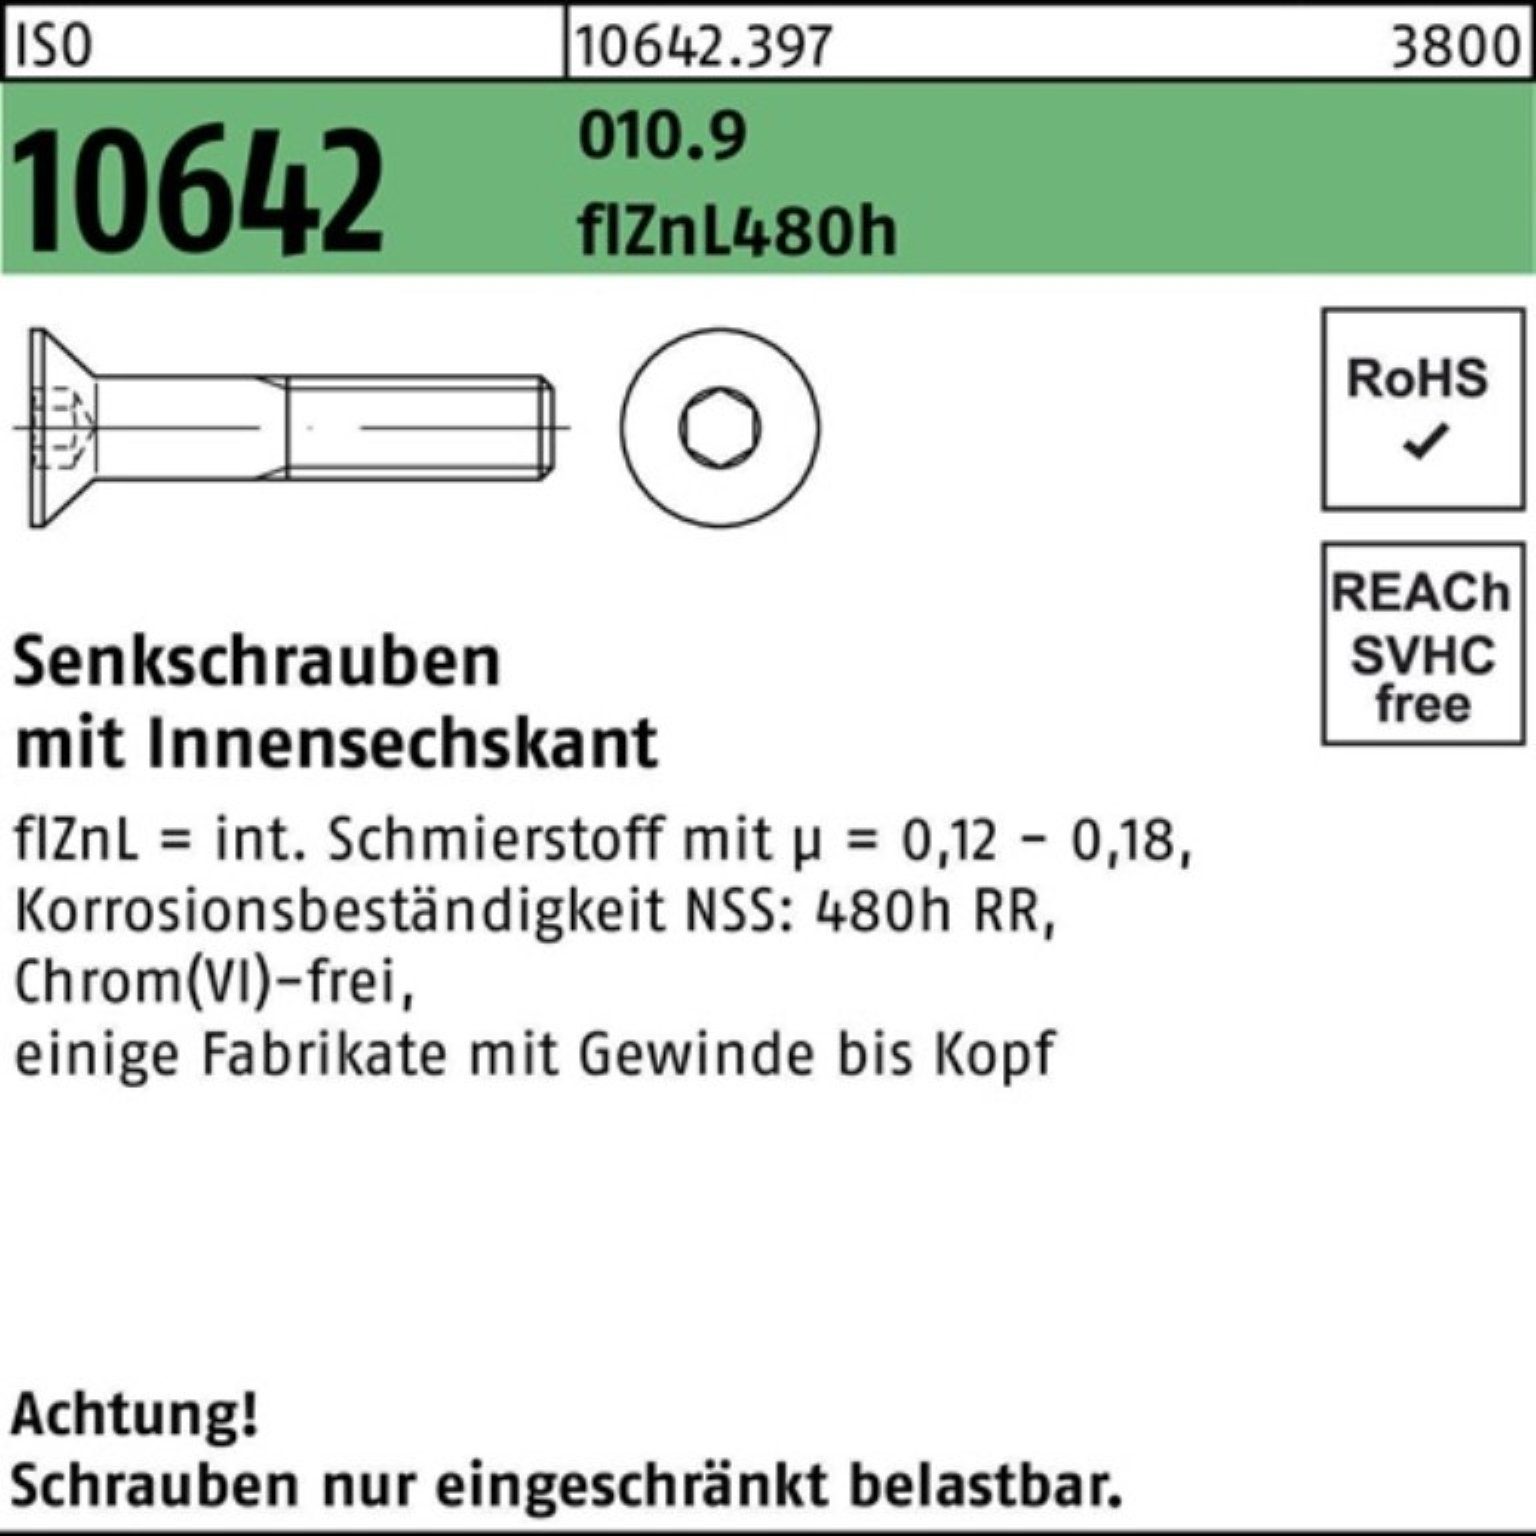 Reyher Senkschraube 100er Pack Senkschraube ISO 10642 Innen-6kt M16x45 010.9 flZnL 480h zi